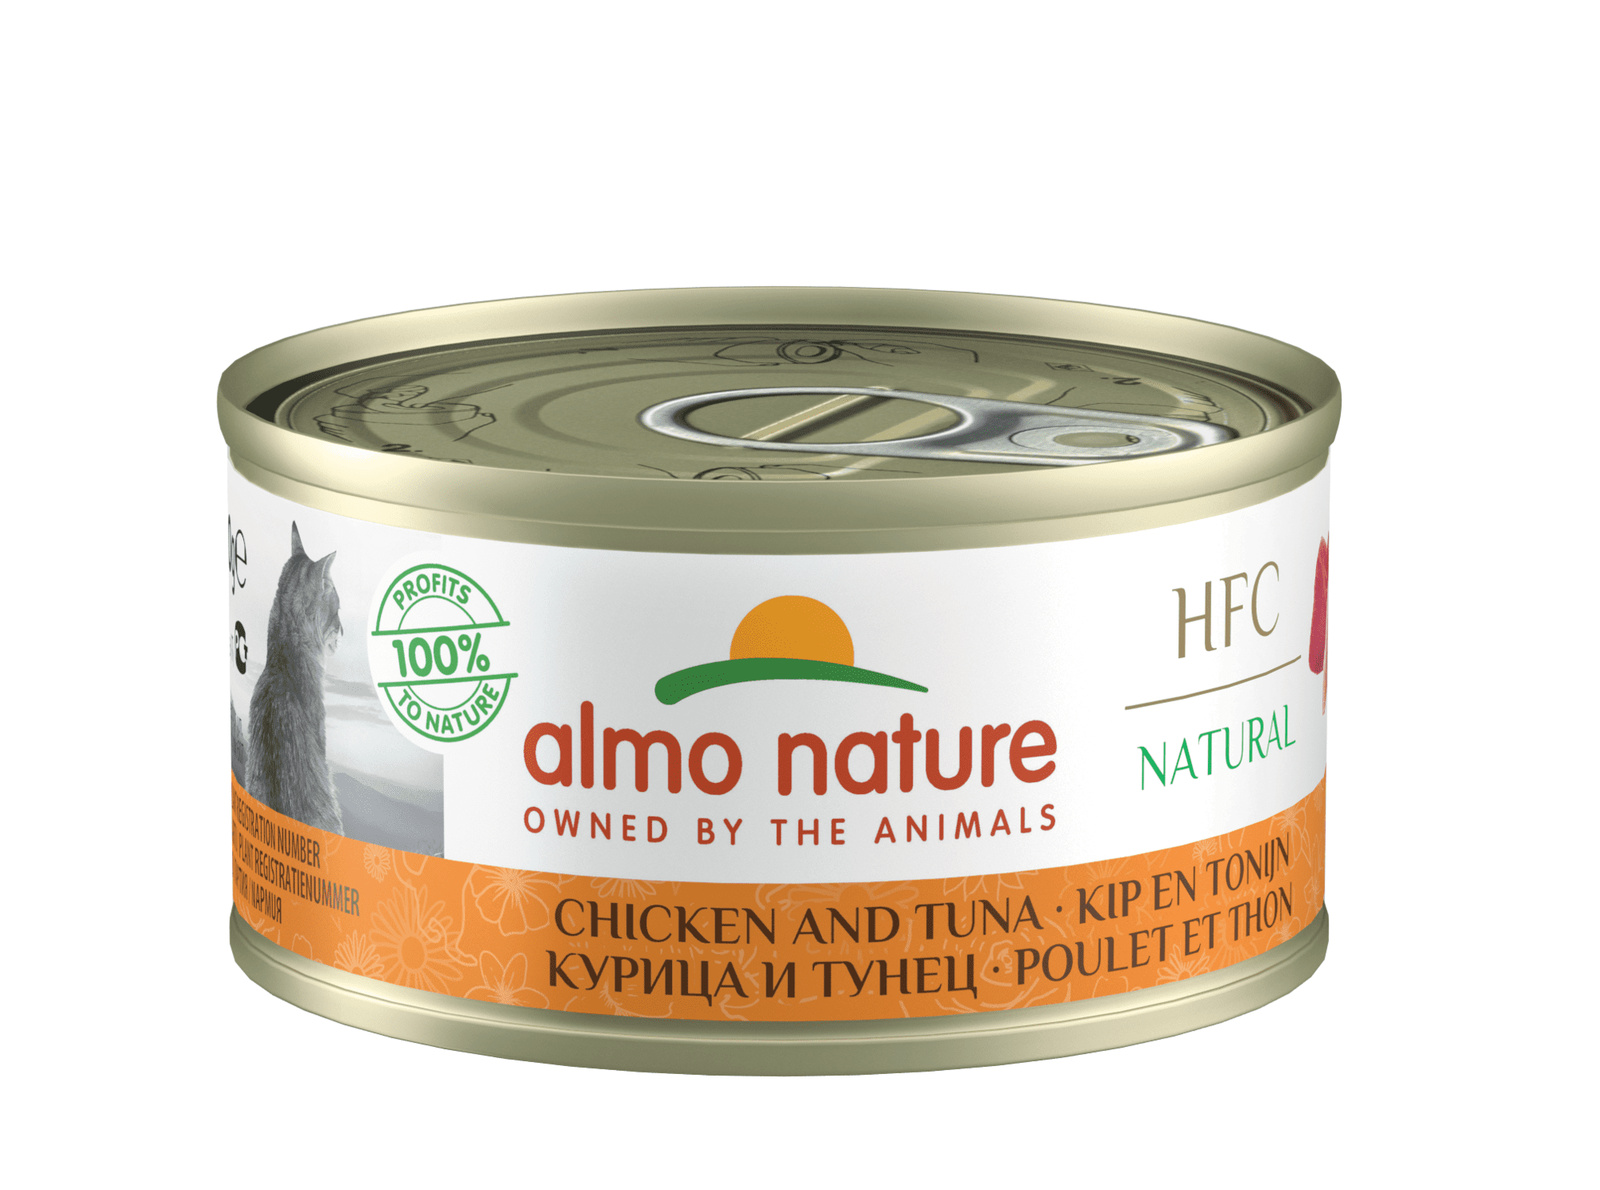 Almo Nature консервы Almo Nature консервы для кошек, с курицей и тунцом, 75% мяса (70 г) almo nature консервы almo nature консервы низкокалорийные для кошек с курицей и киноа 70 г